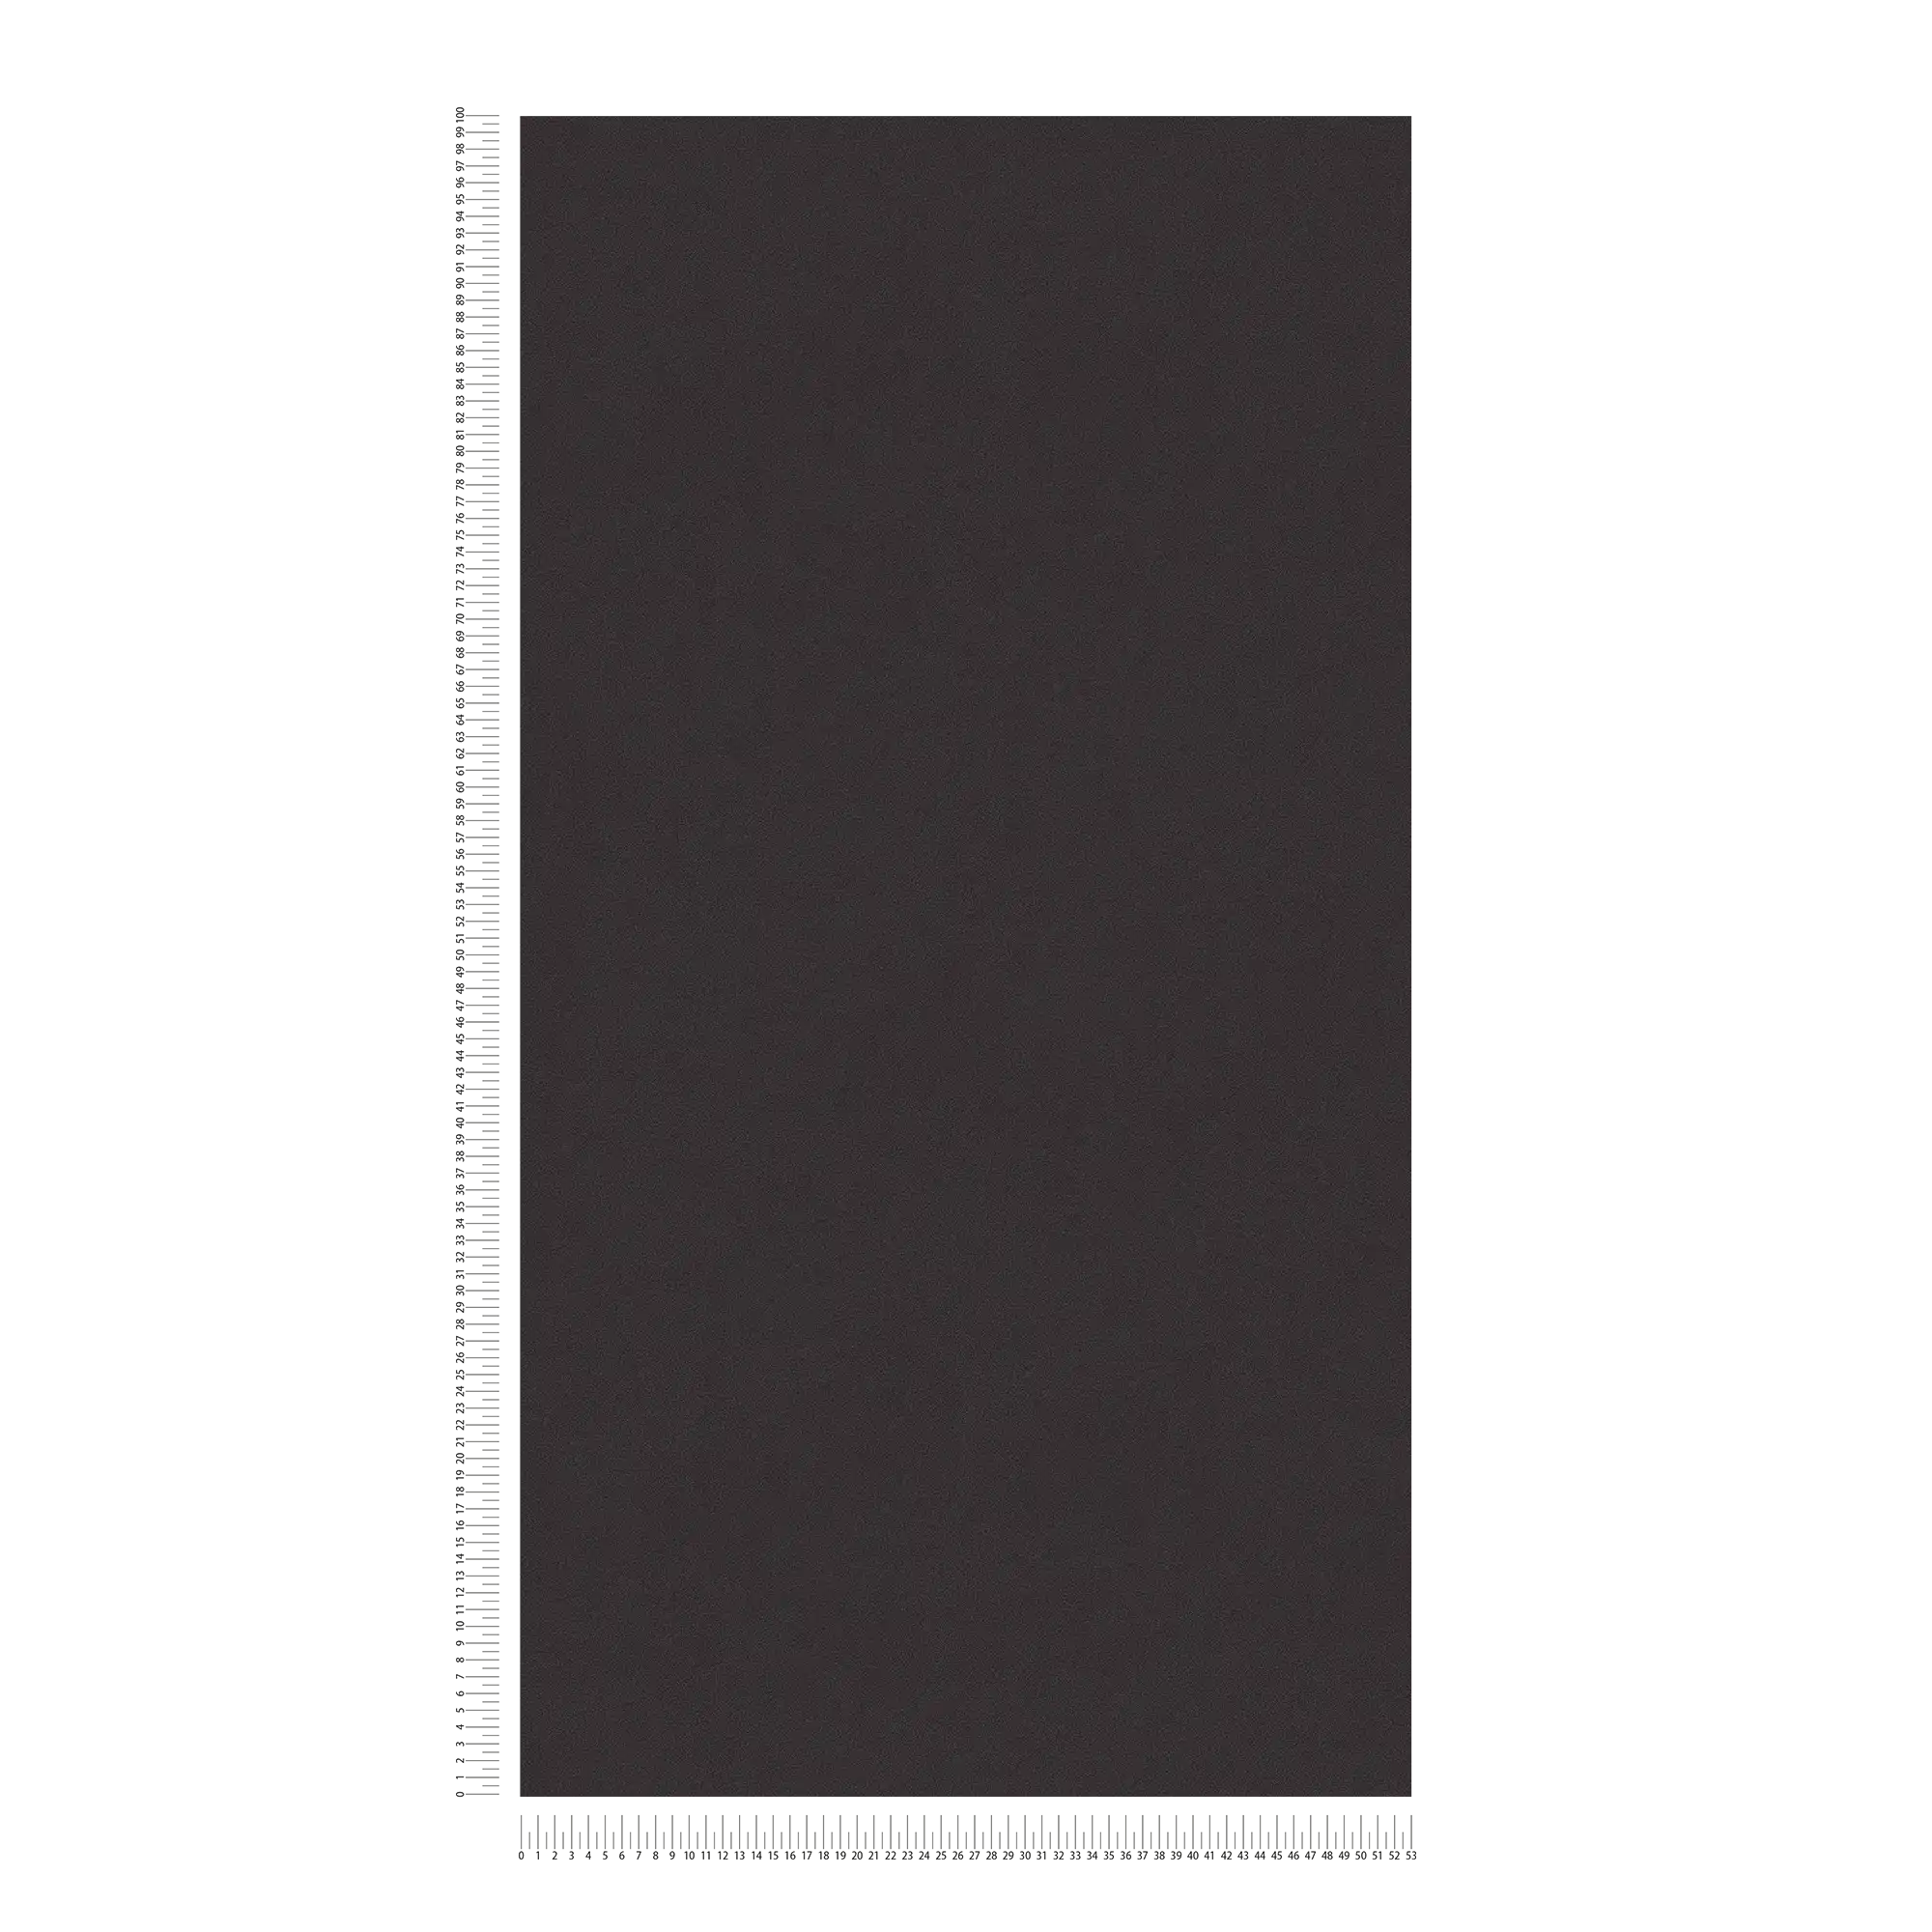             behang zwart MICHALSKY met gevoerd structuurpatroon
        